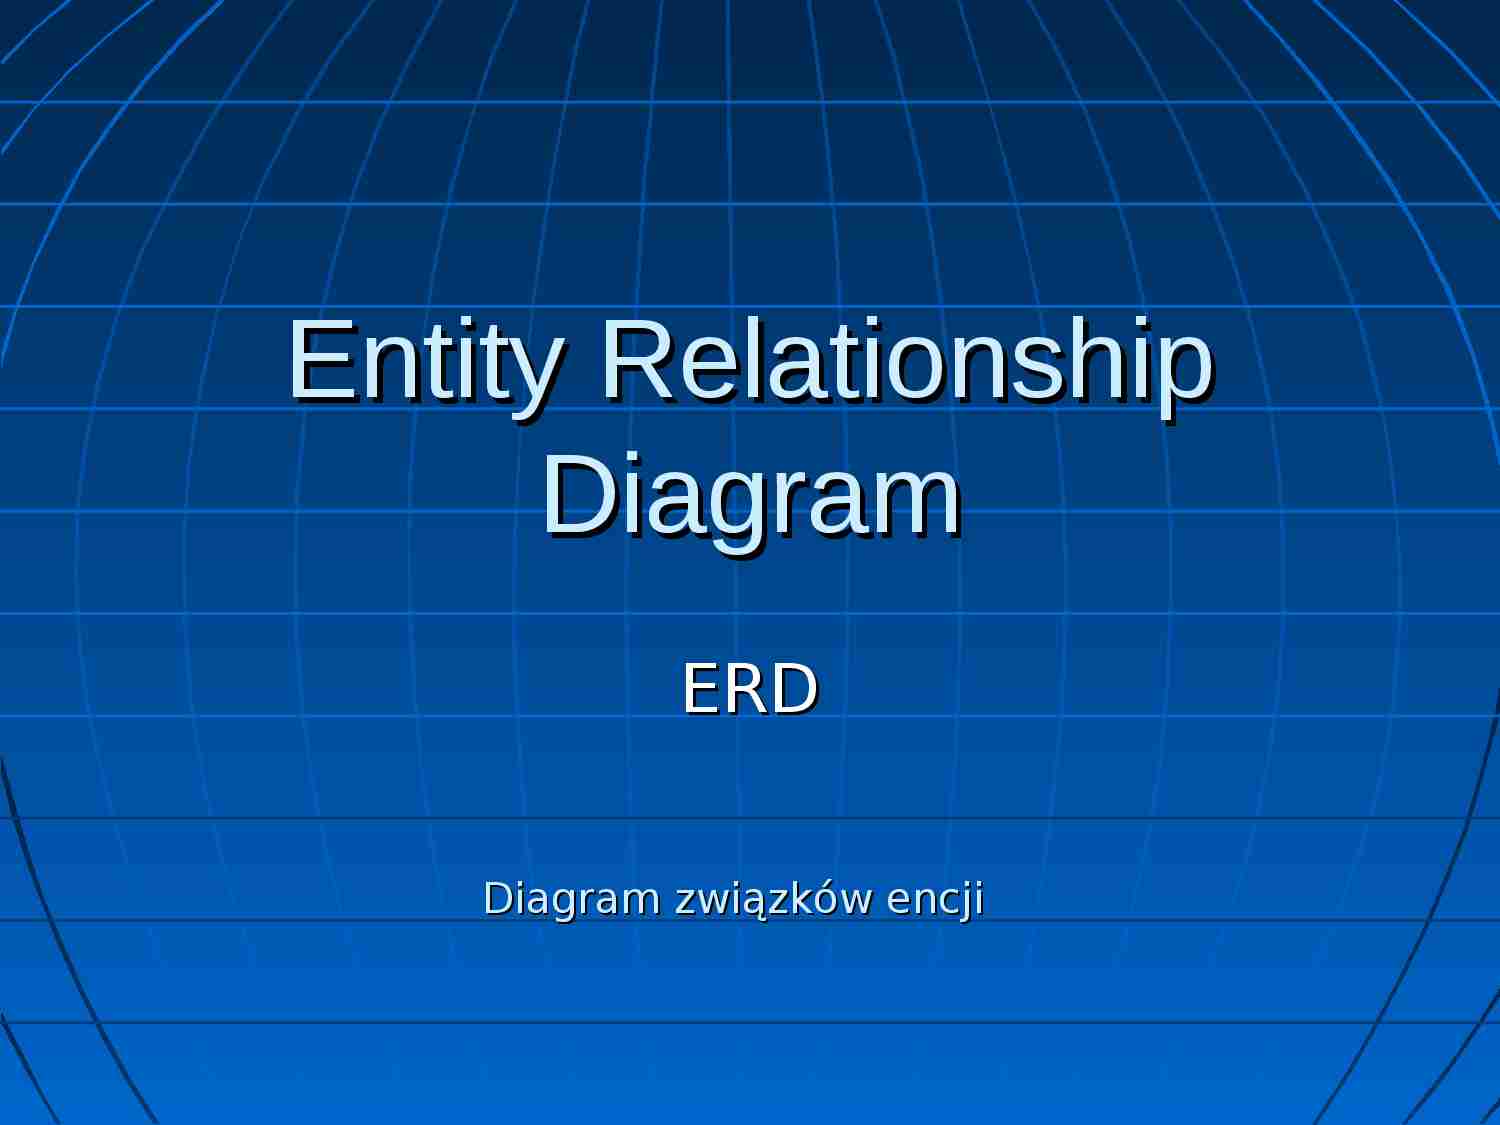 Entity Relationship Diagram - ERD- Diagram związku encji - strona 1